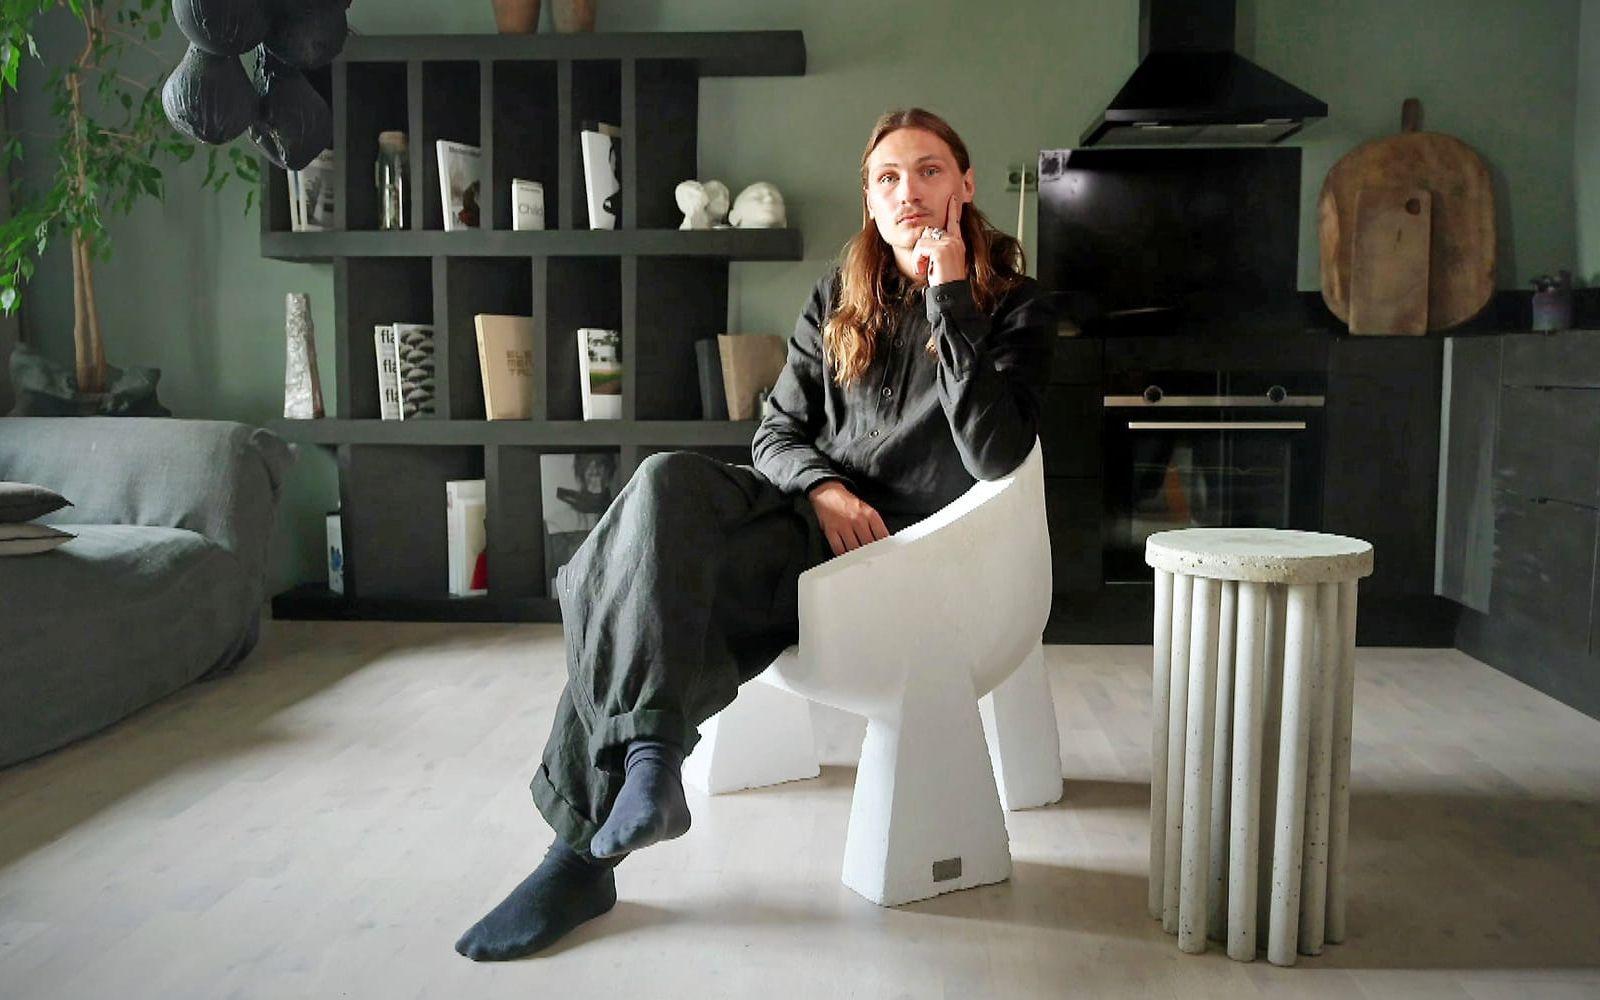 Lucas Morten hemma i lägenheten i Varberg i samband med ett reportaget av Sveriges Television i serien ”Hemma hos inredningsarkitekten”. 